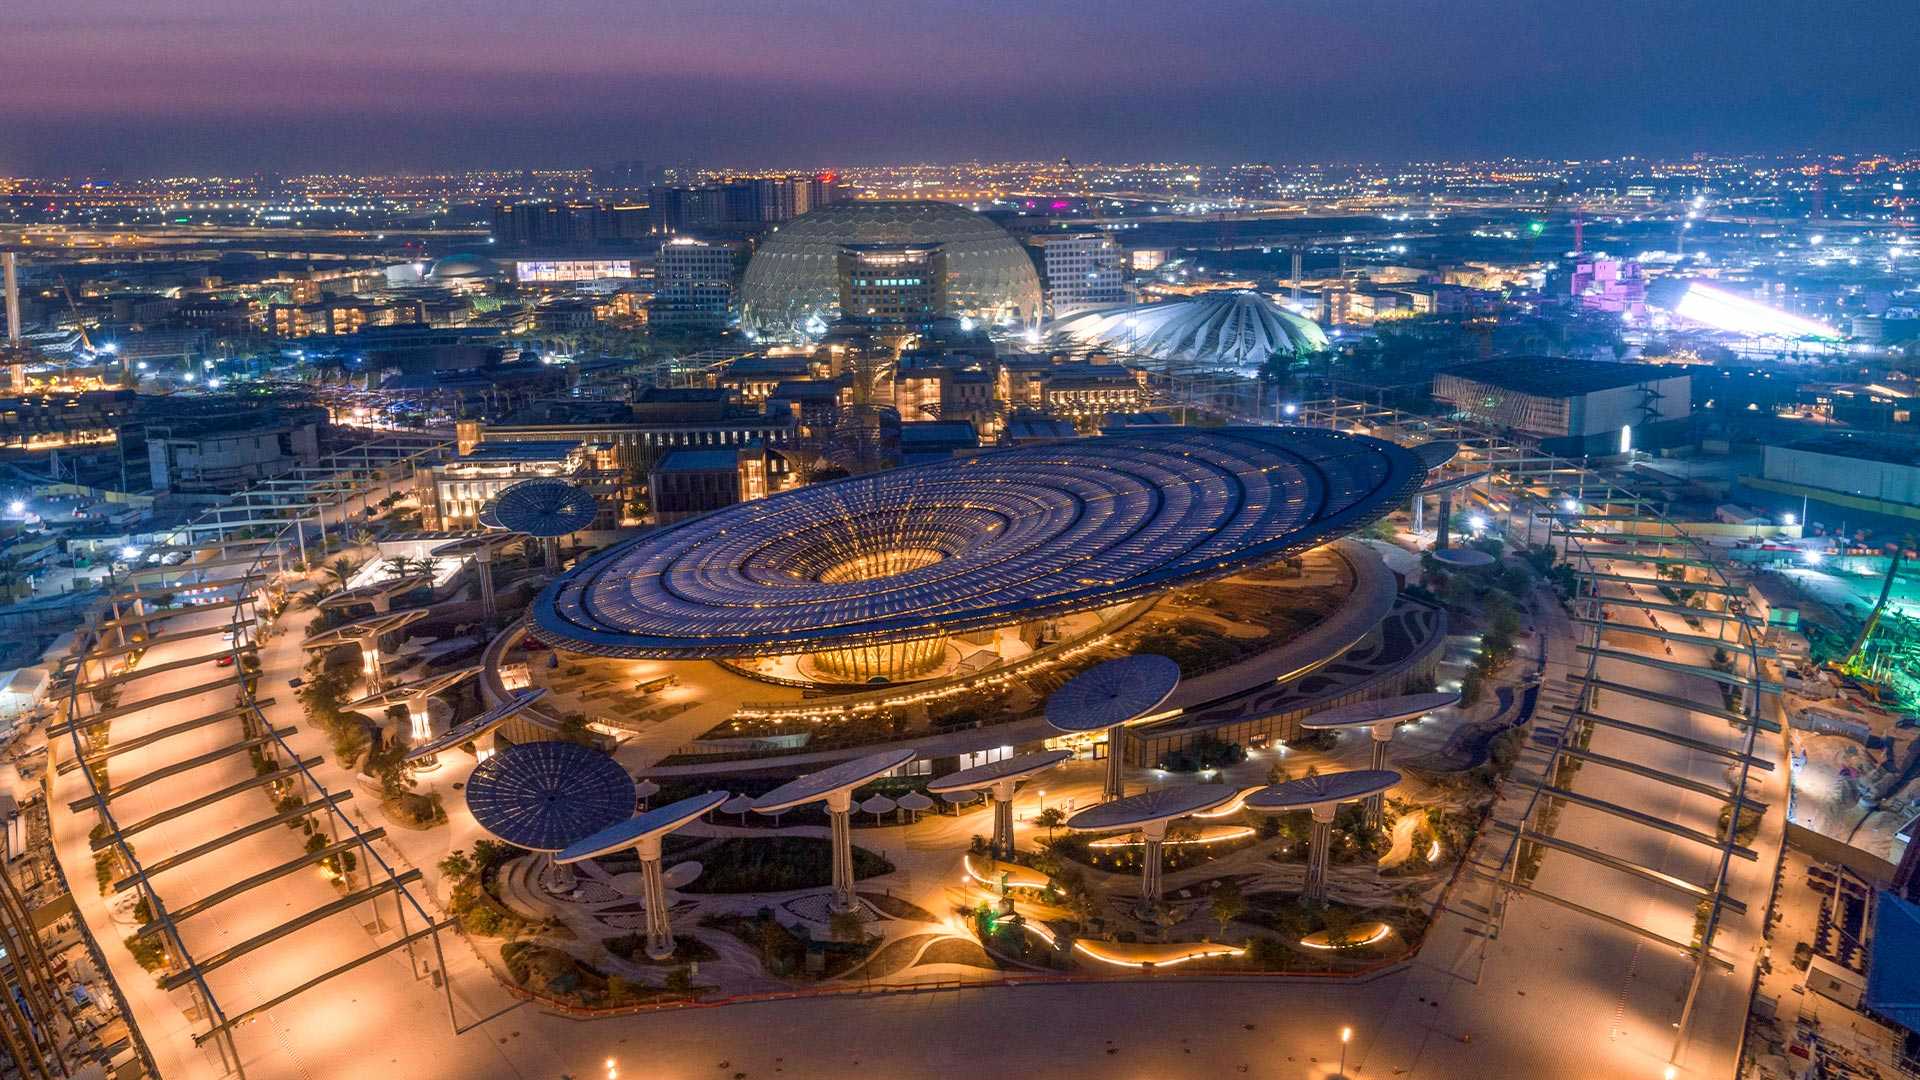 Retrouvez-nous à l&rsquo;Expo Dubaï 2020 du 1 octobre 2021 au 31 mars 2022 sur le stand &#8230;.